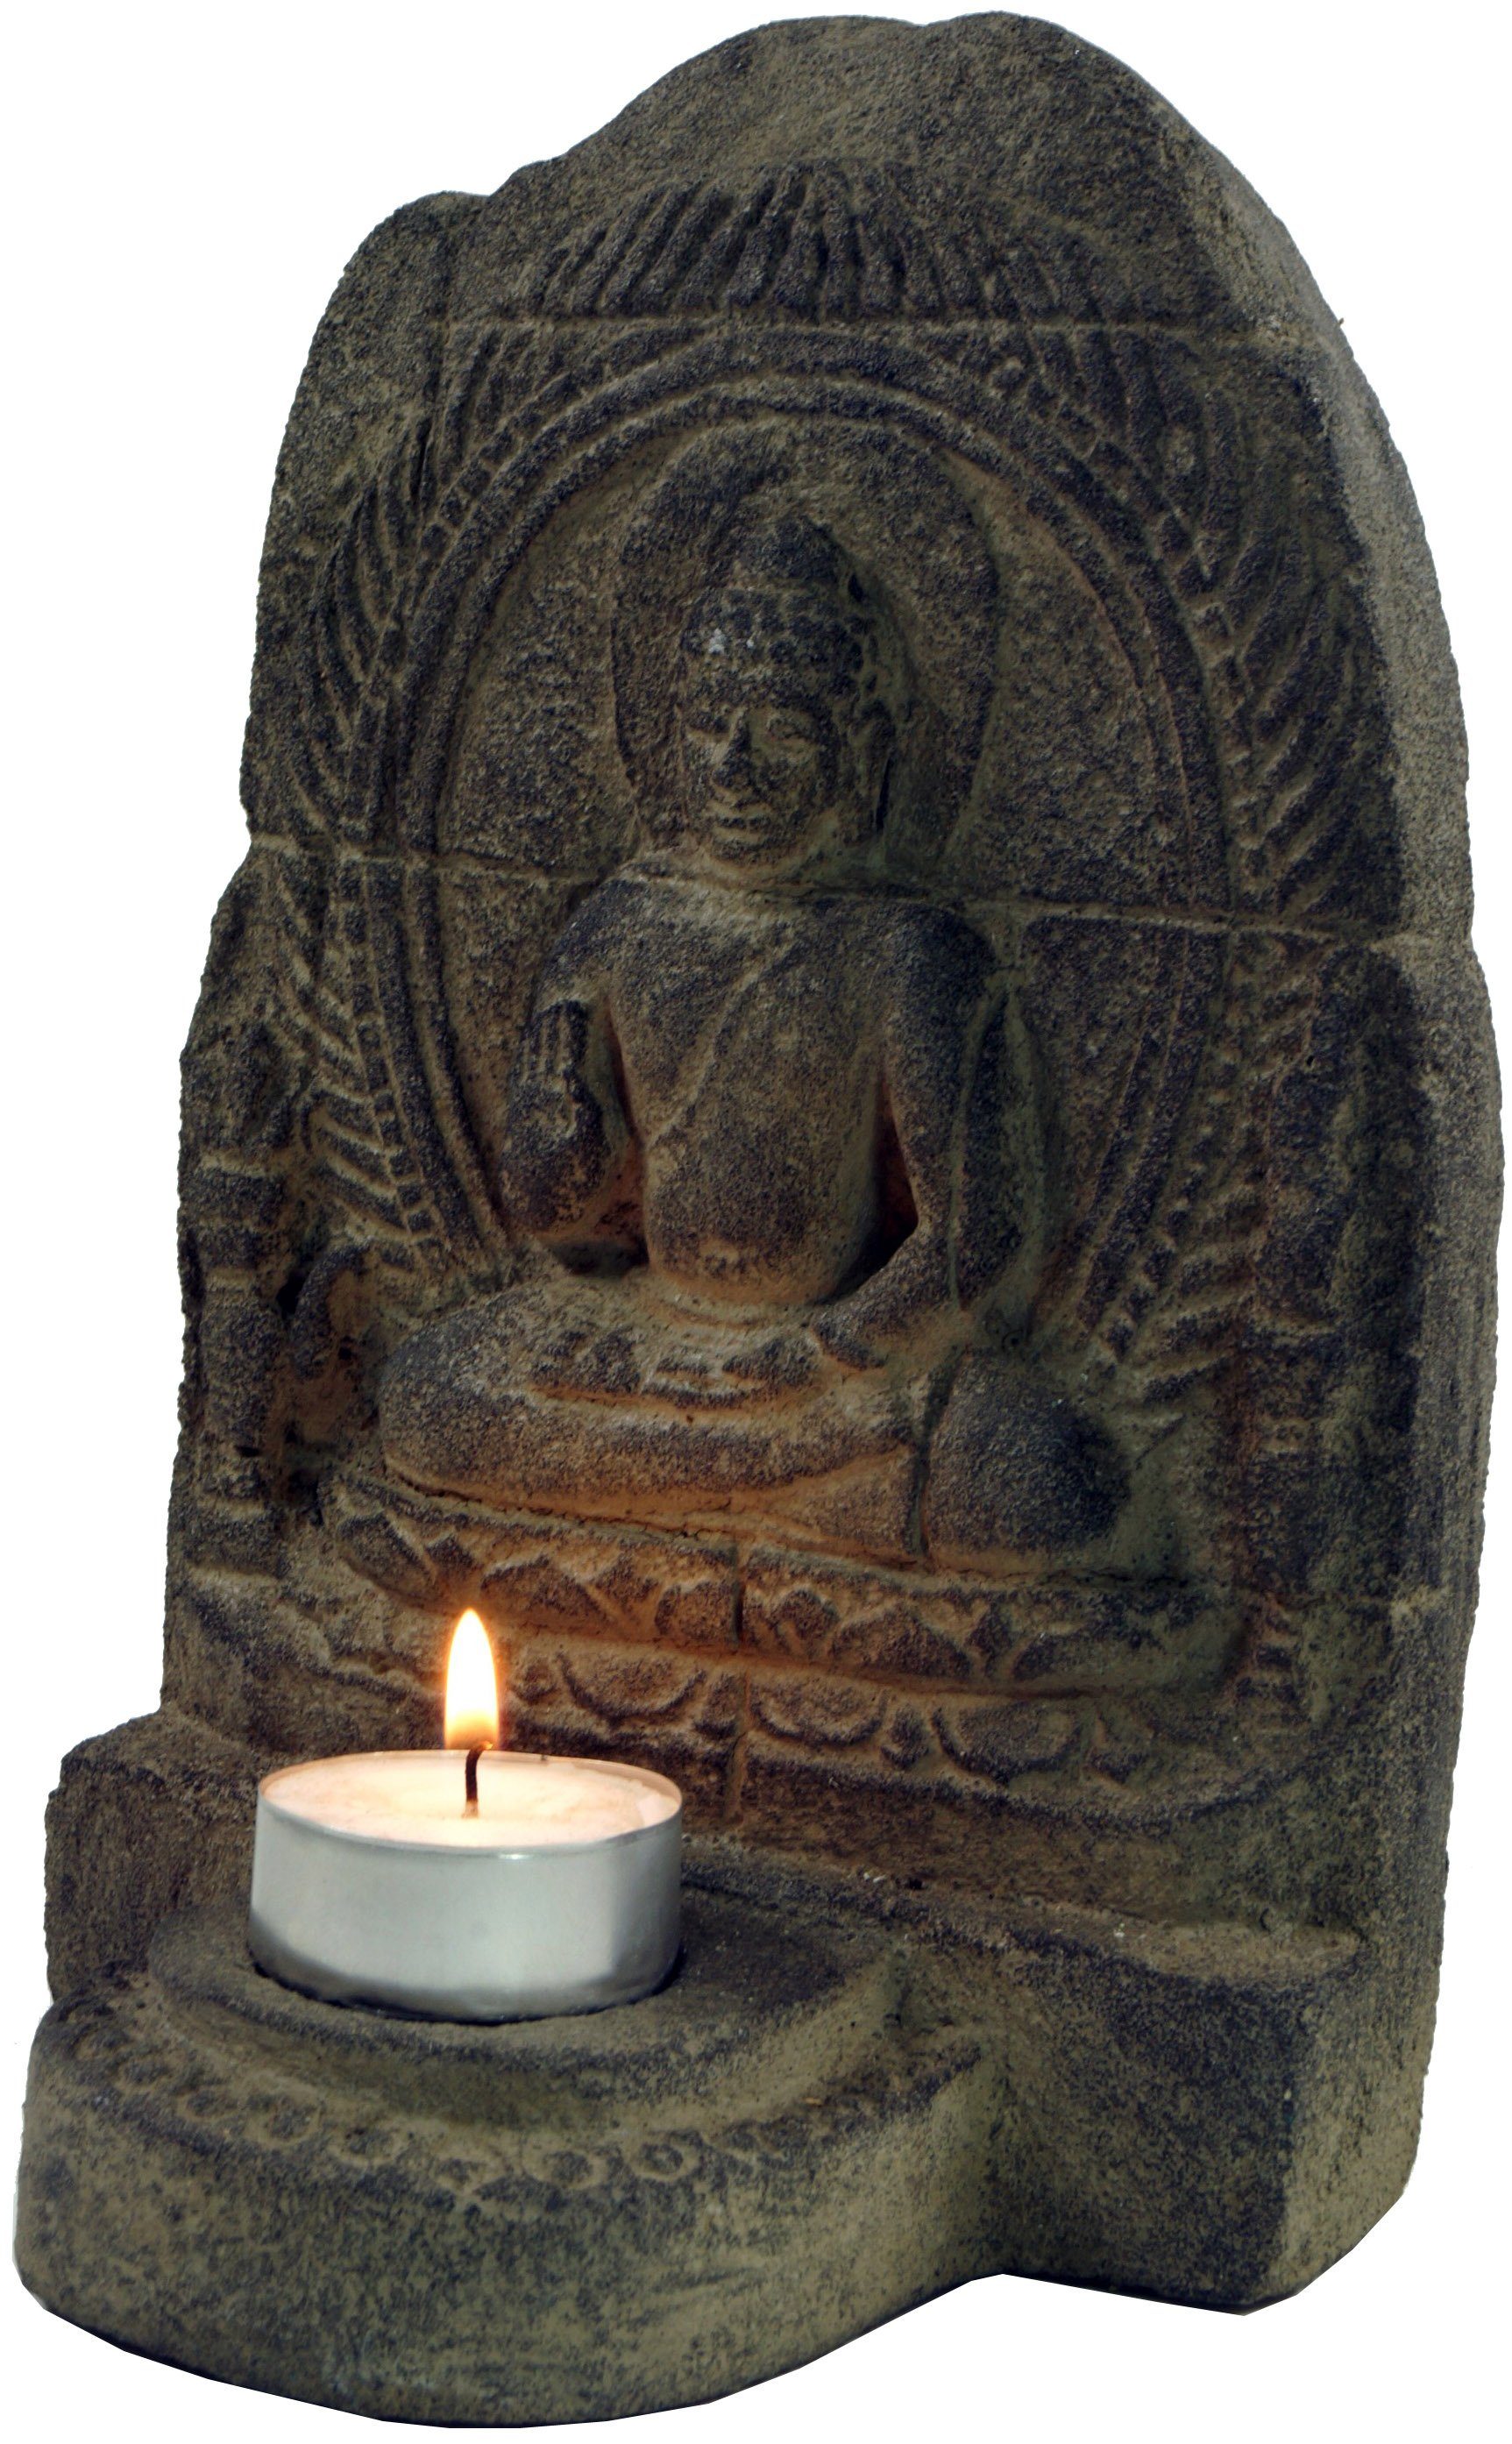 Stein Buddhafigur Minitempel, Teelichthalter Buddhafigur, Guru-Shop aus